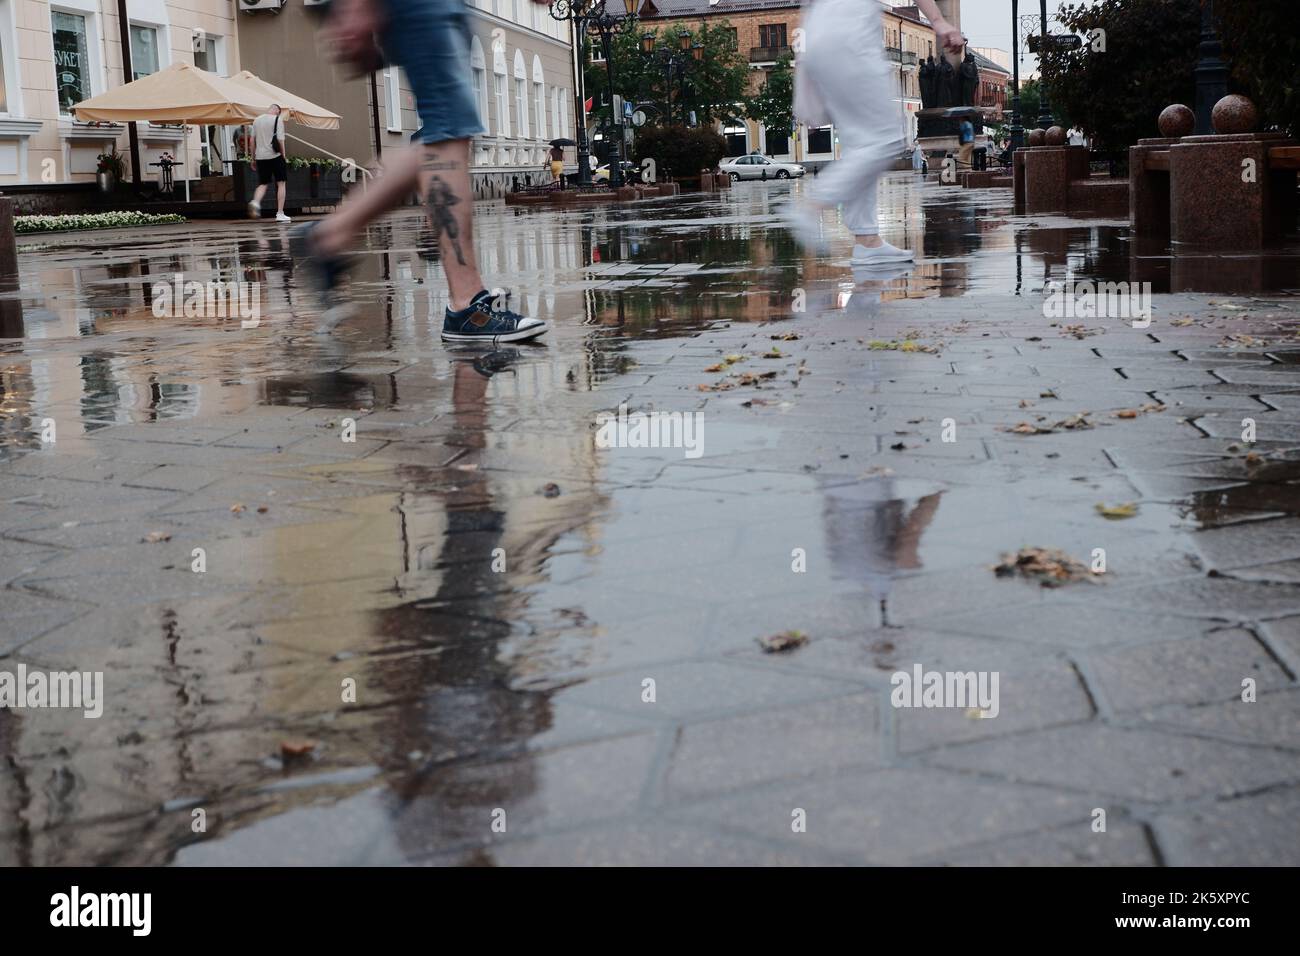 Straßen der Stadt nach starkem Regen. Barfuß auf Gehwegen mit Pfützen und Reflexionen Stockfoto